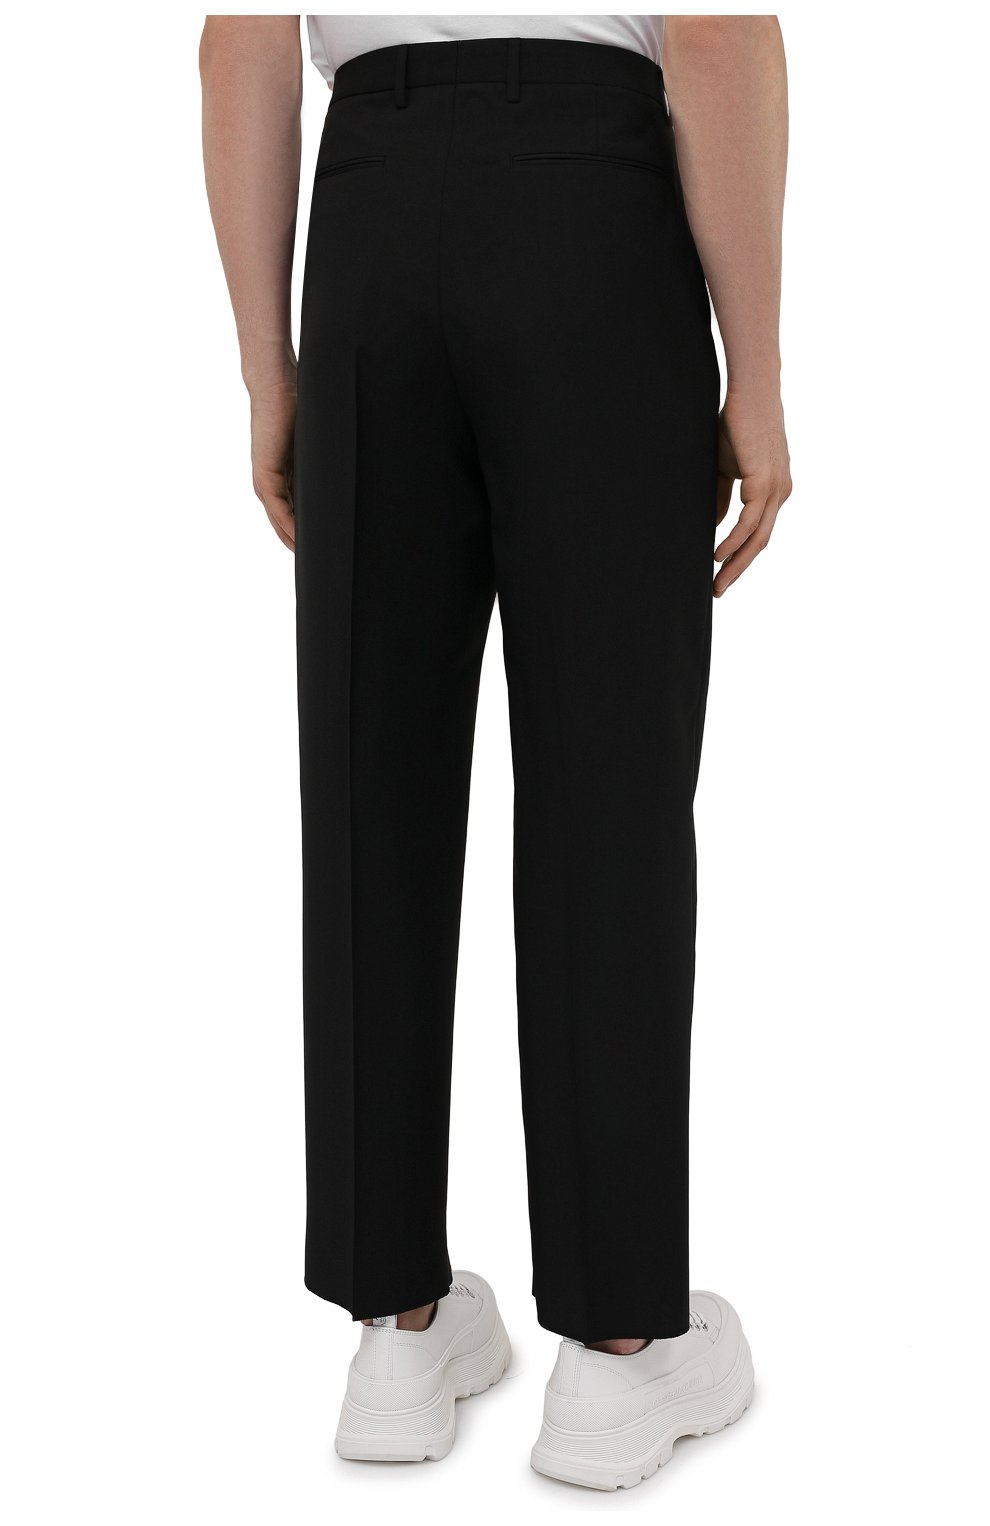 Мужские шерстяные брюки VALENTINO черного цвета, арт. WV3RBG8125S | Фото 4 (Материал внешний: Шерсть; Длина (брюки, джинсы): Стандартные; Случай: Повседневный; Стили: Минимализм)